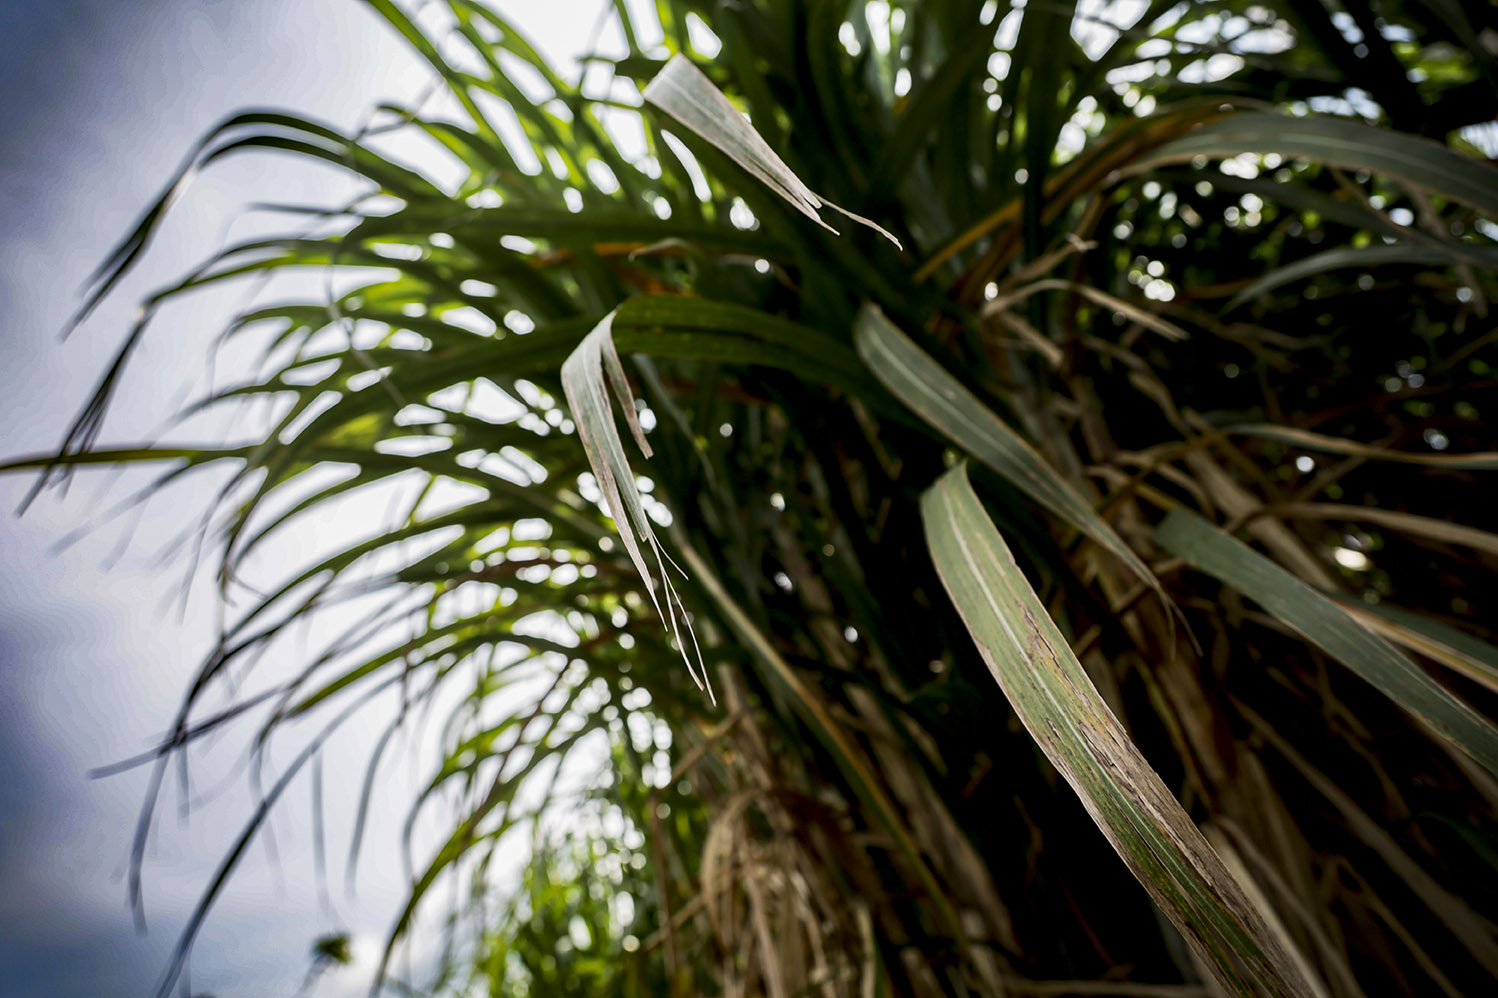 La plantación de caña de azúcar es una de las industrias que mas consume agua para su riego y una de las que más predomina en la costa sur. Los ingenios señalan que ahora utilizan filtros para el fertilizante de la caña y así evitar la contaminación del río y la erosión. Andrea Godínez